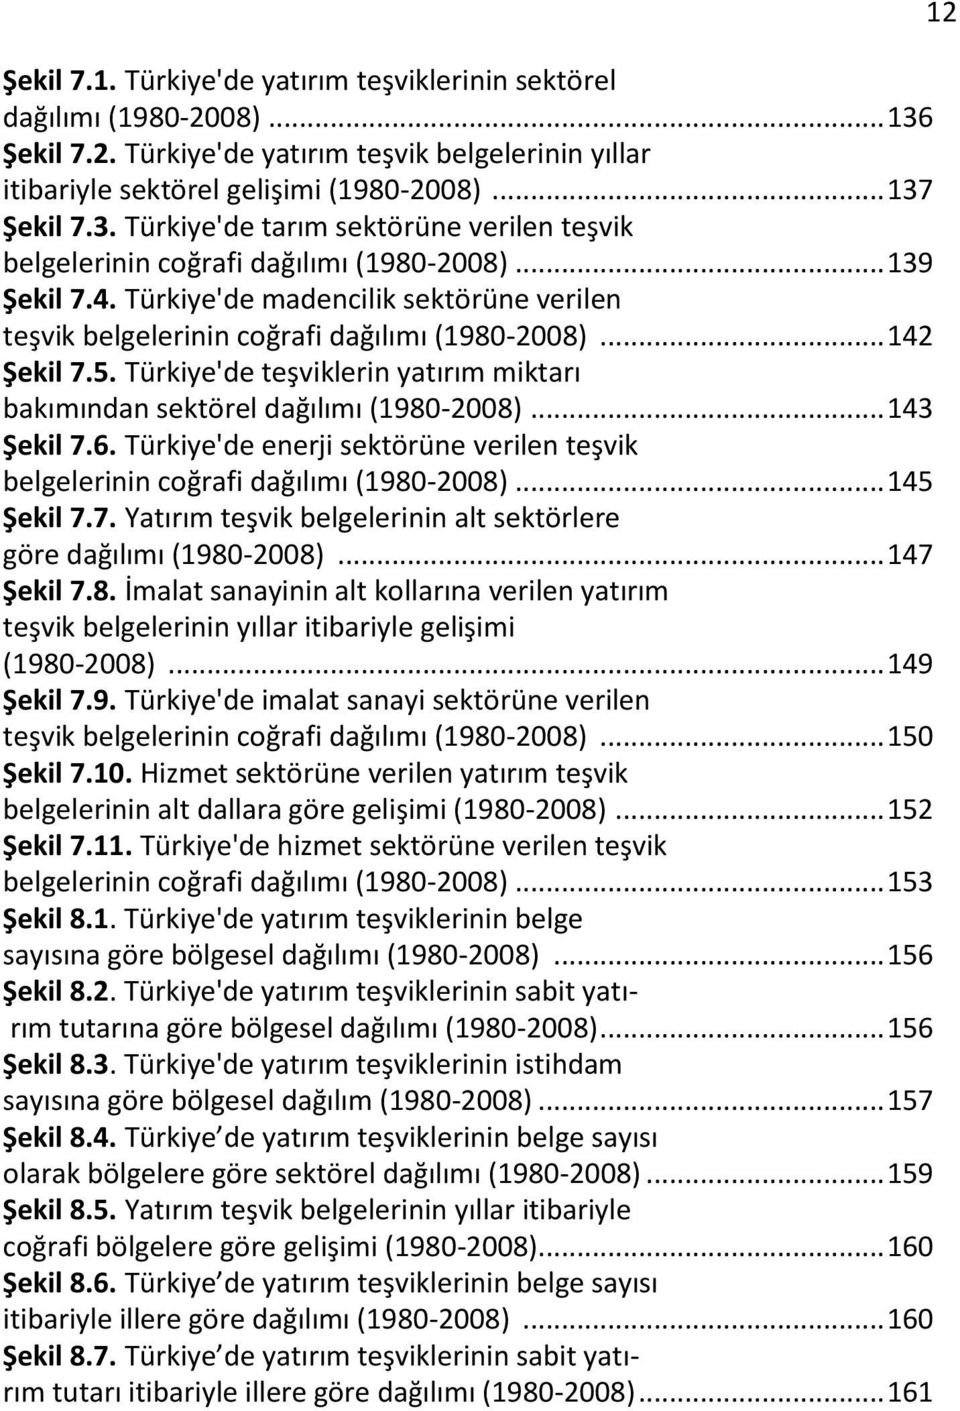 Türkiye'de teşviklerin yatırım miktarı bakımından sektörel dağılımı (1980-2008)... 143 Şekil 7.6. Türkiye'de enerji sektörüne verilen teşvik belgelerinin coğrafi dağılımı (1980-2008)... 145 Şekil 7.7. Yatırım teşvik belgelerinin alt sektörlere göre dağılımı (1980-2008).